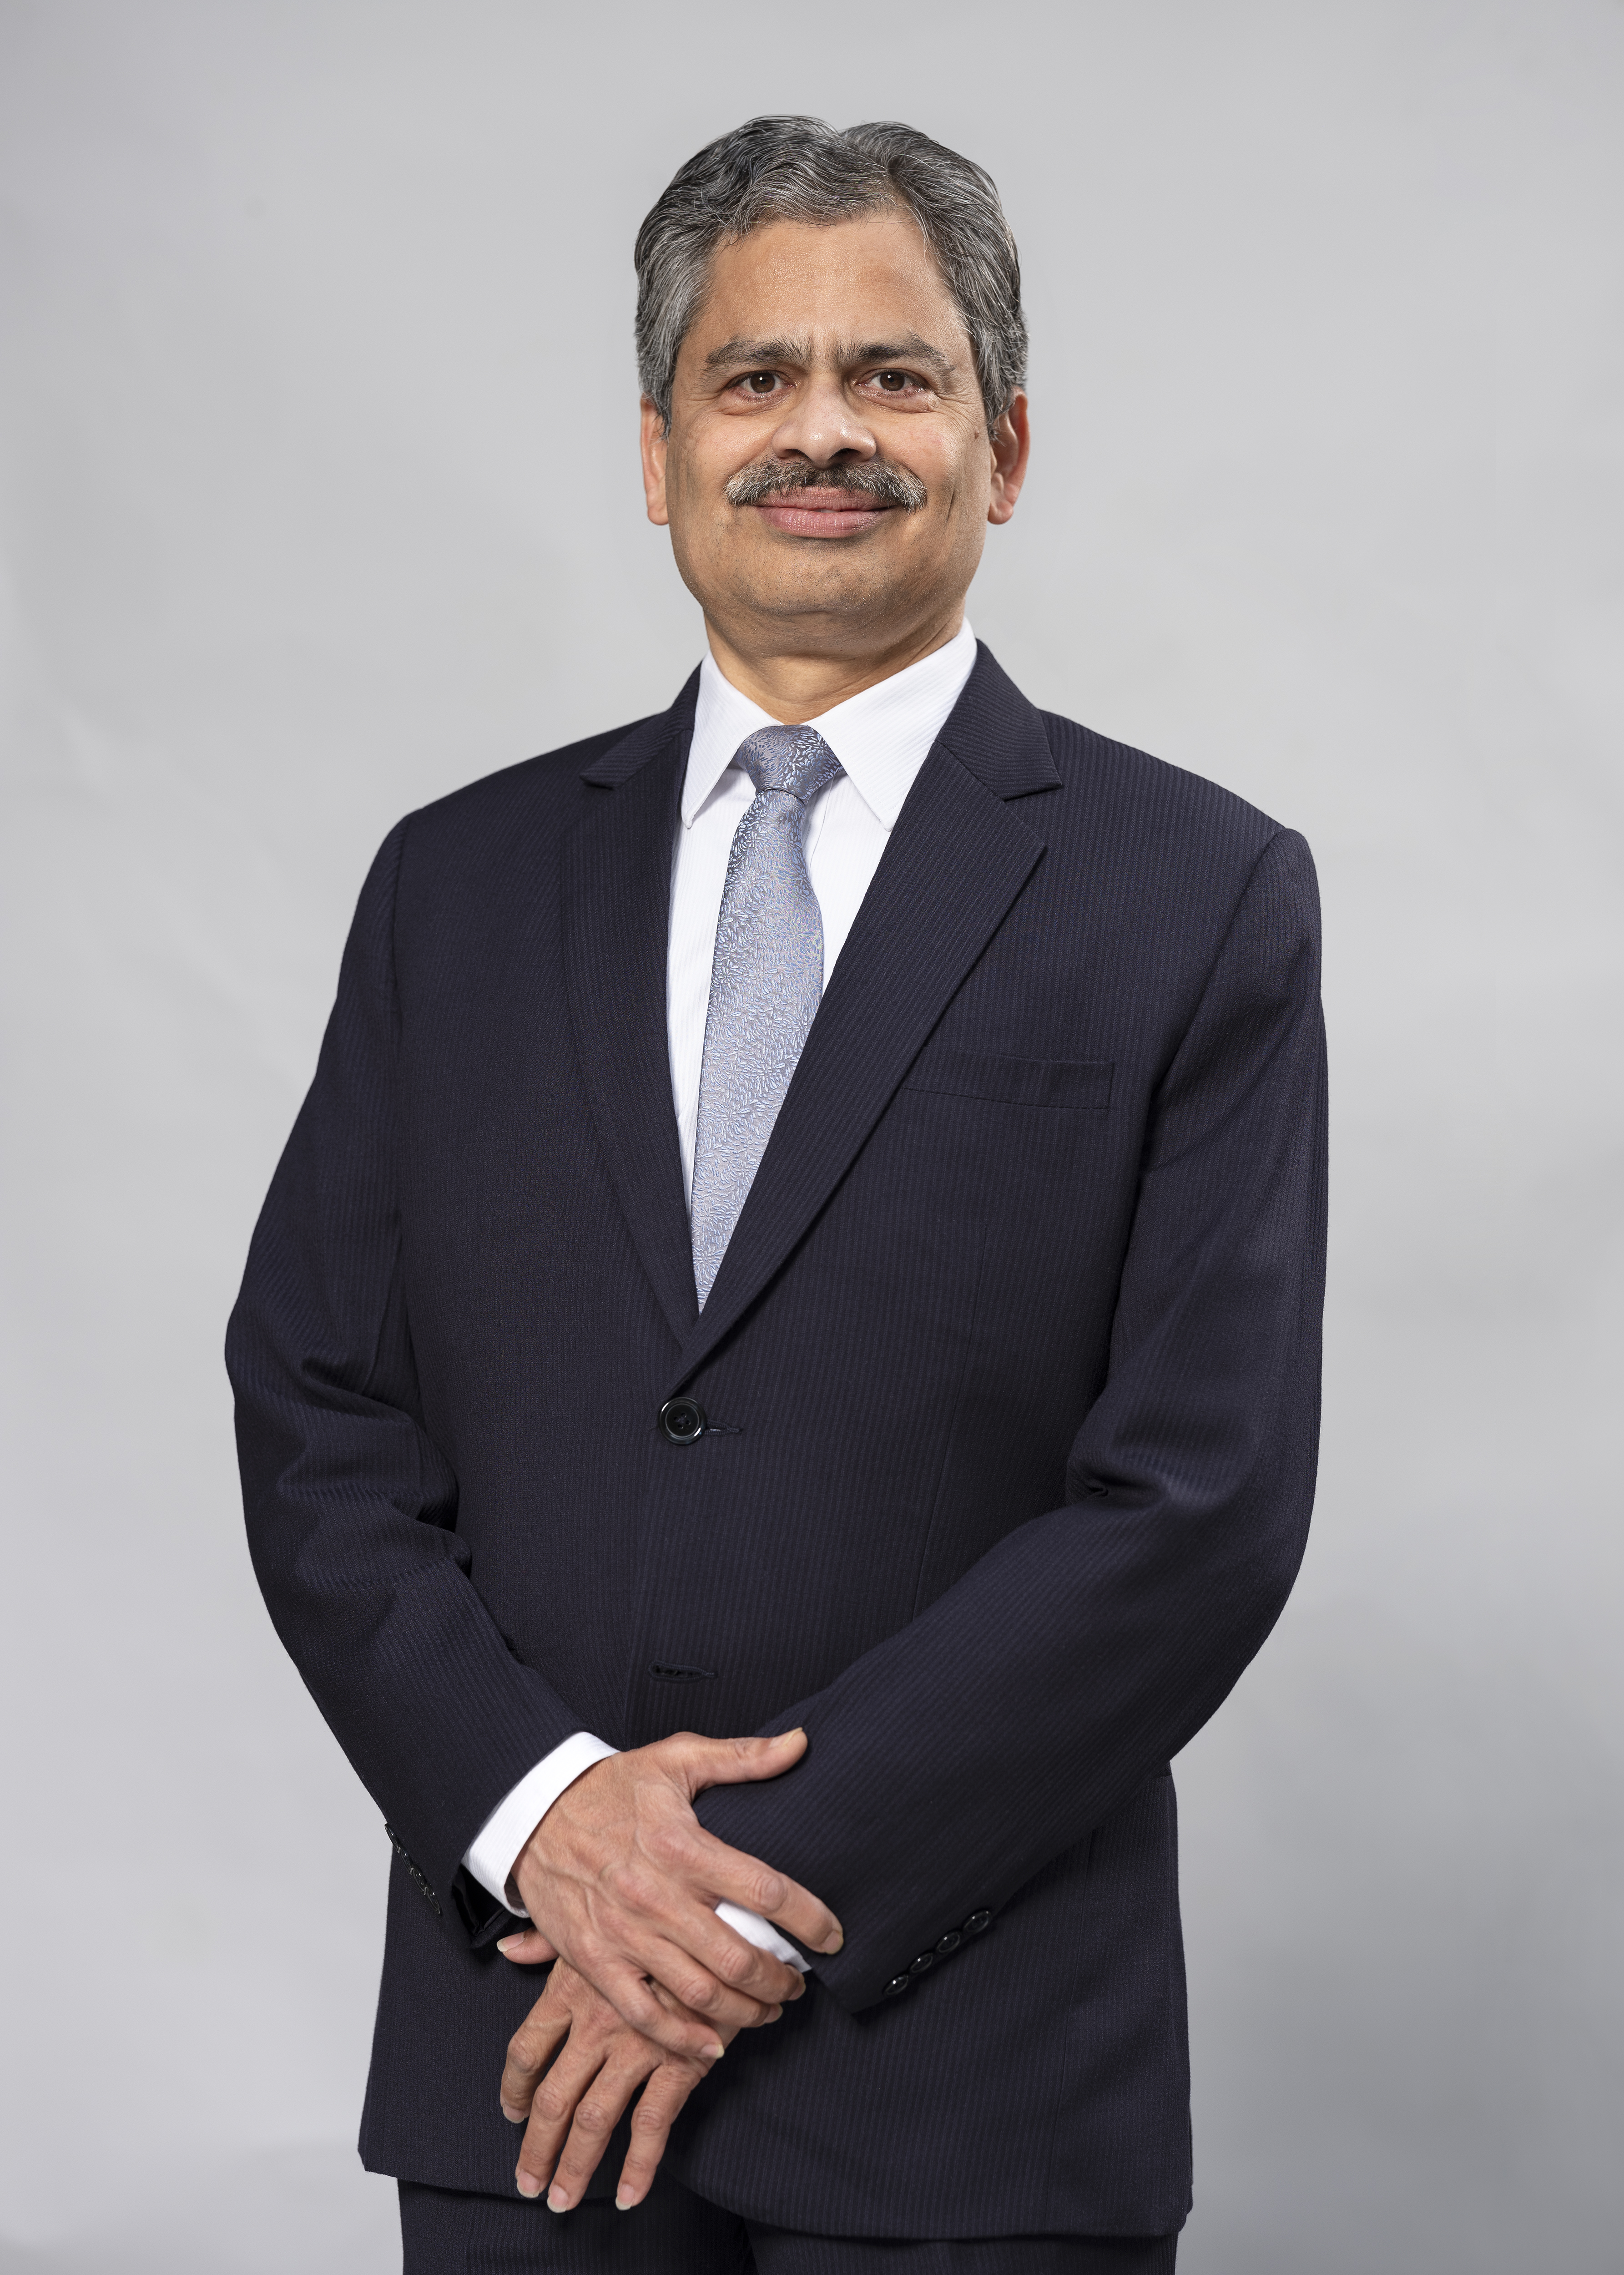 Mahesh Palashikar, <span>President, GE South Asia</span>